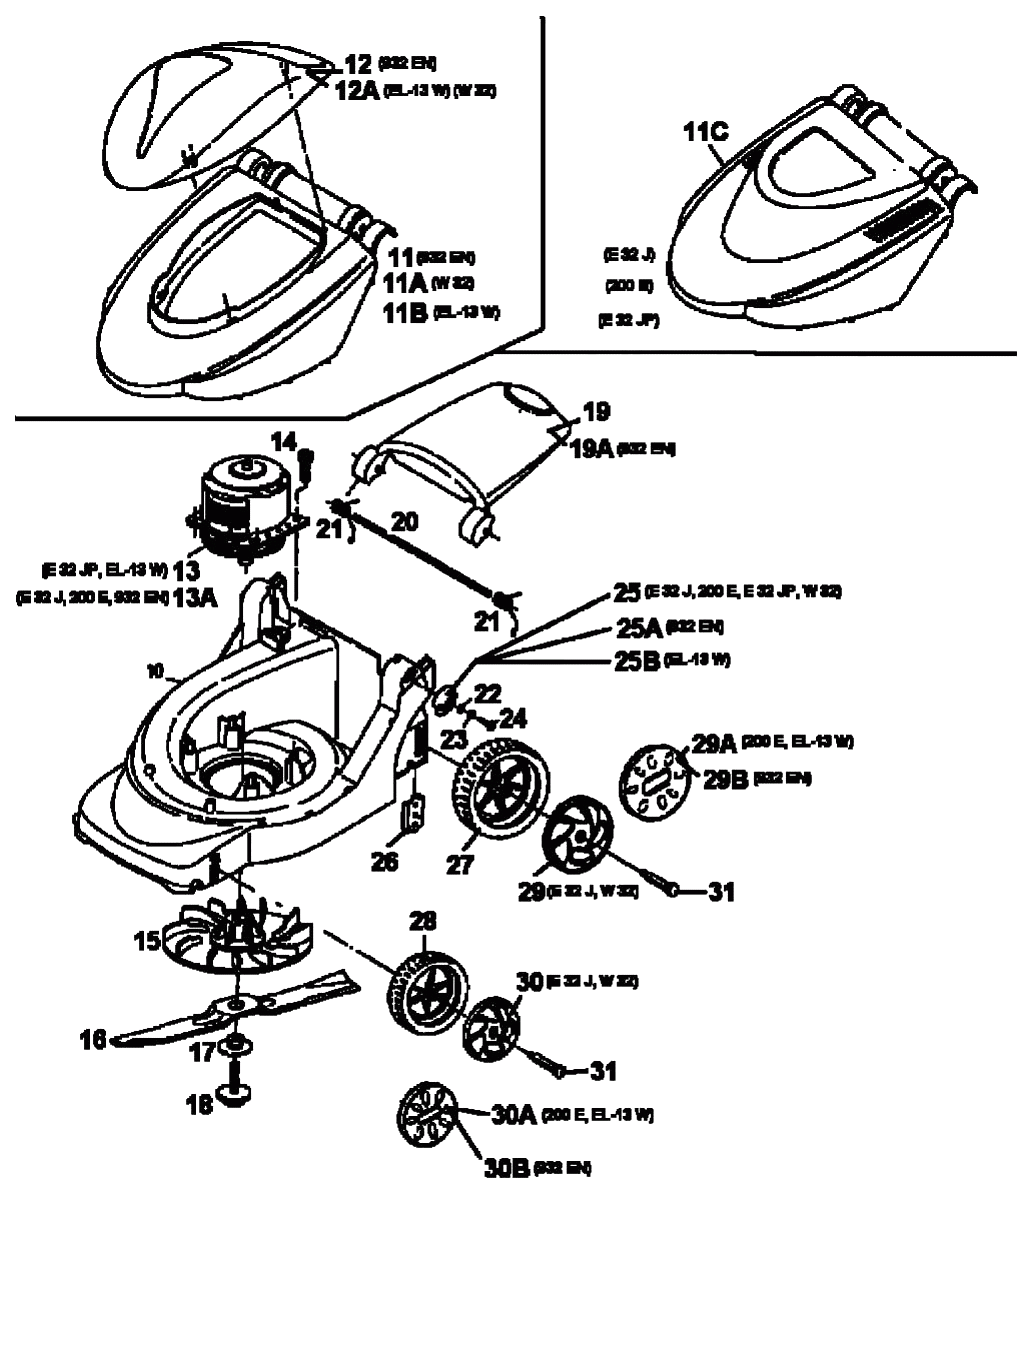 MTD Артикул 18A-C0D-678 (год выпуска 1998). Электромотор, ножи, колеса